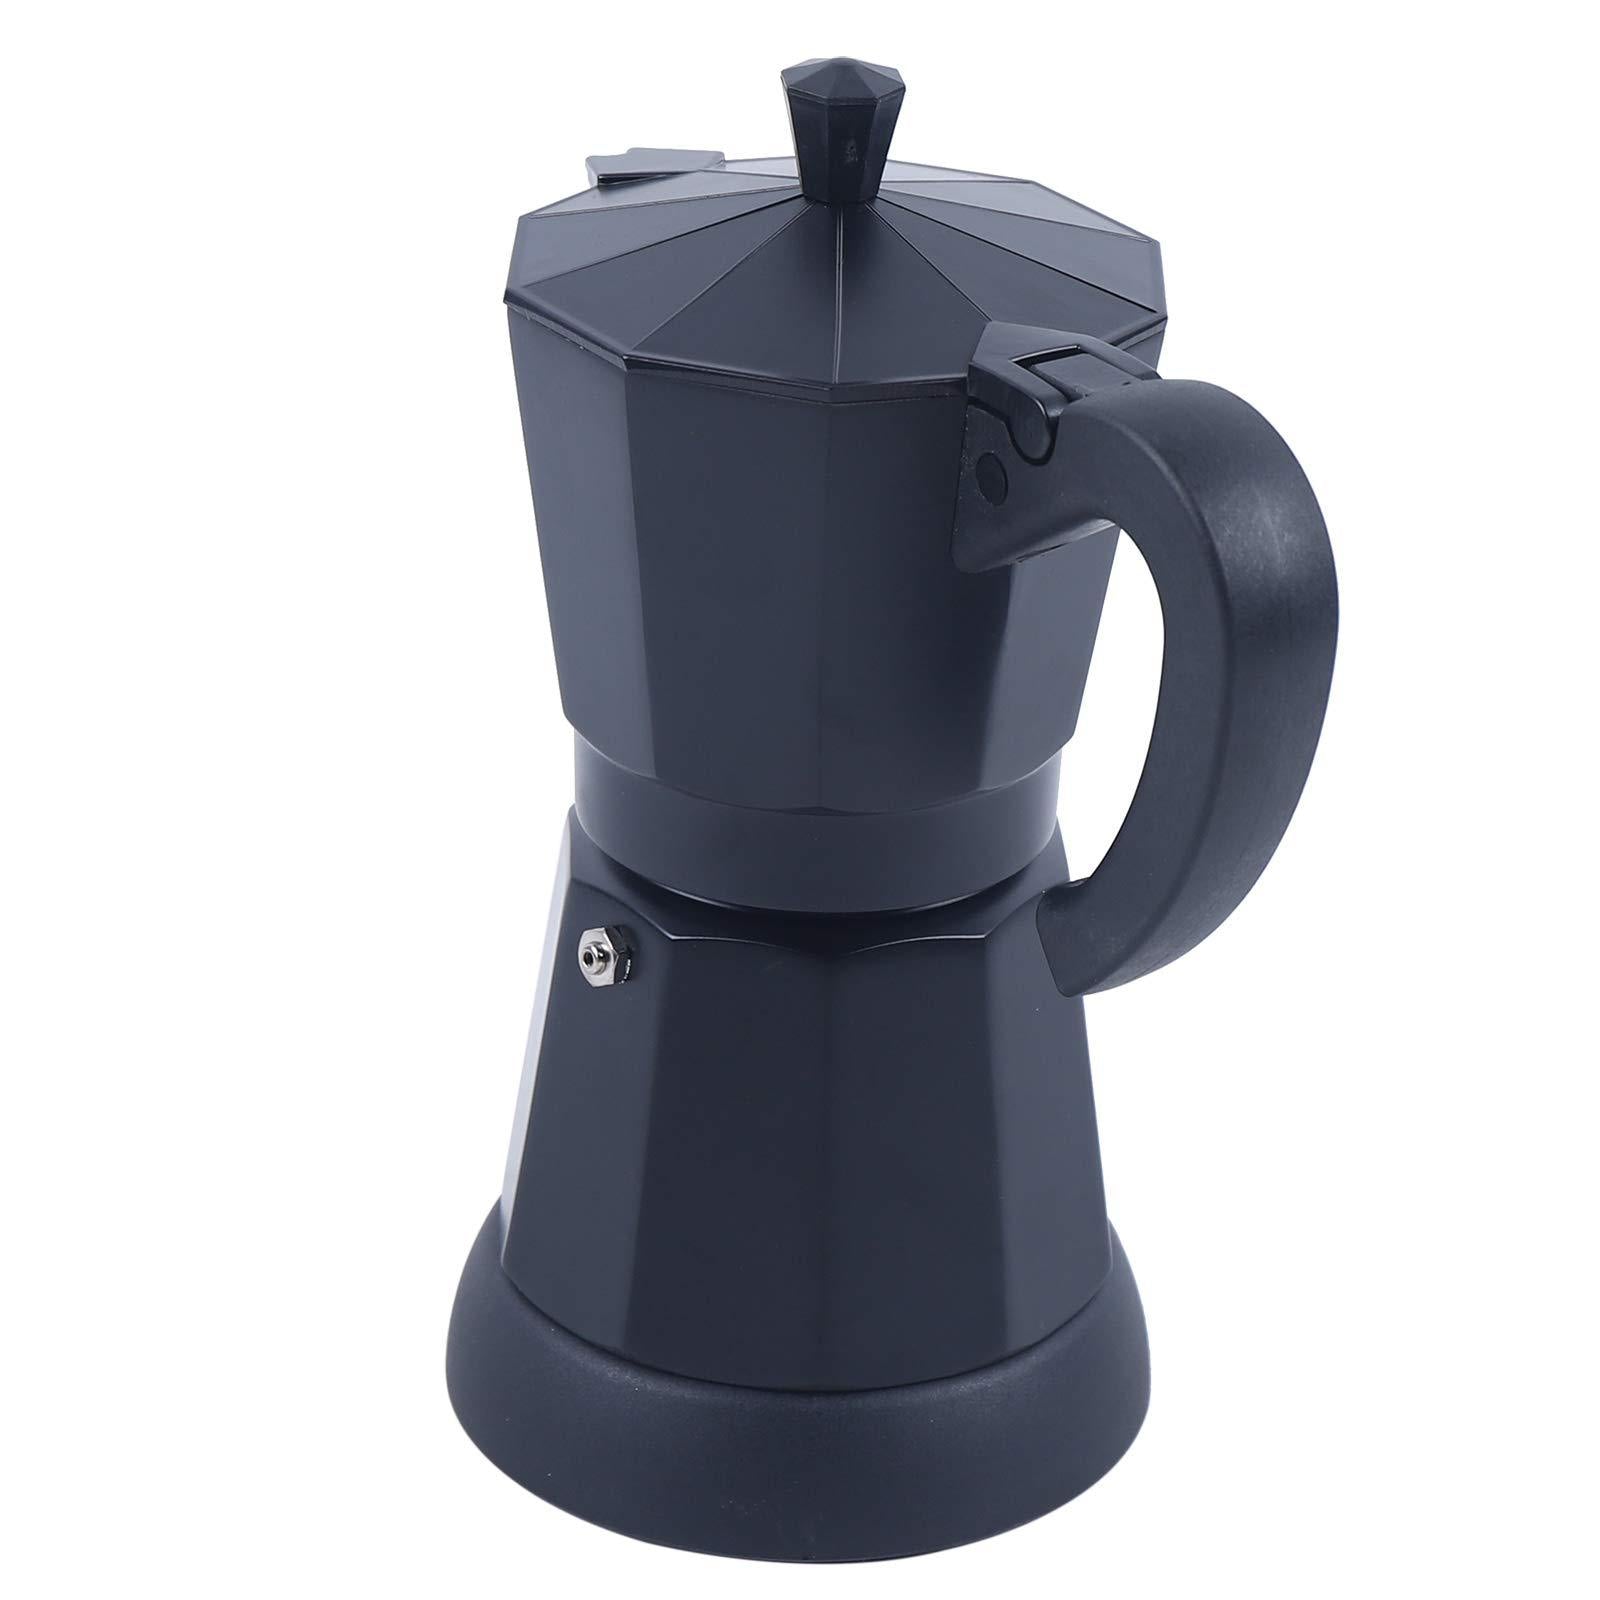 Caffettiera elettrica da 300 ml con fondo separato, filtro caffè lavabile e rimovibile, colore nero, 220-240 V